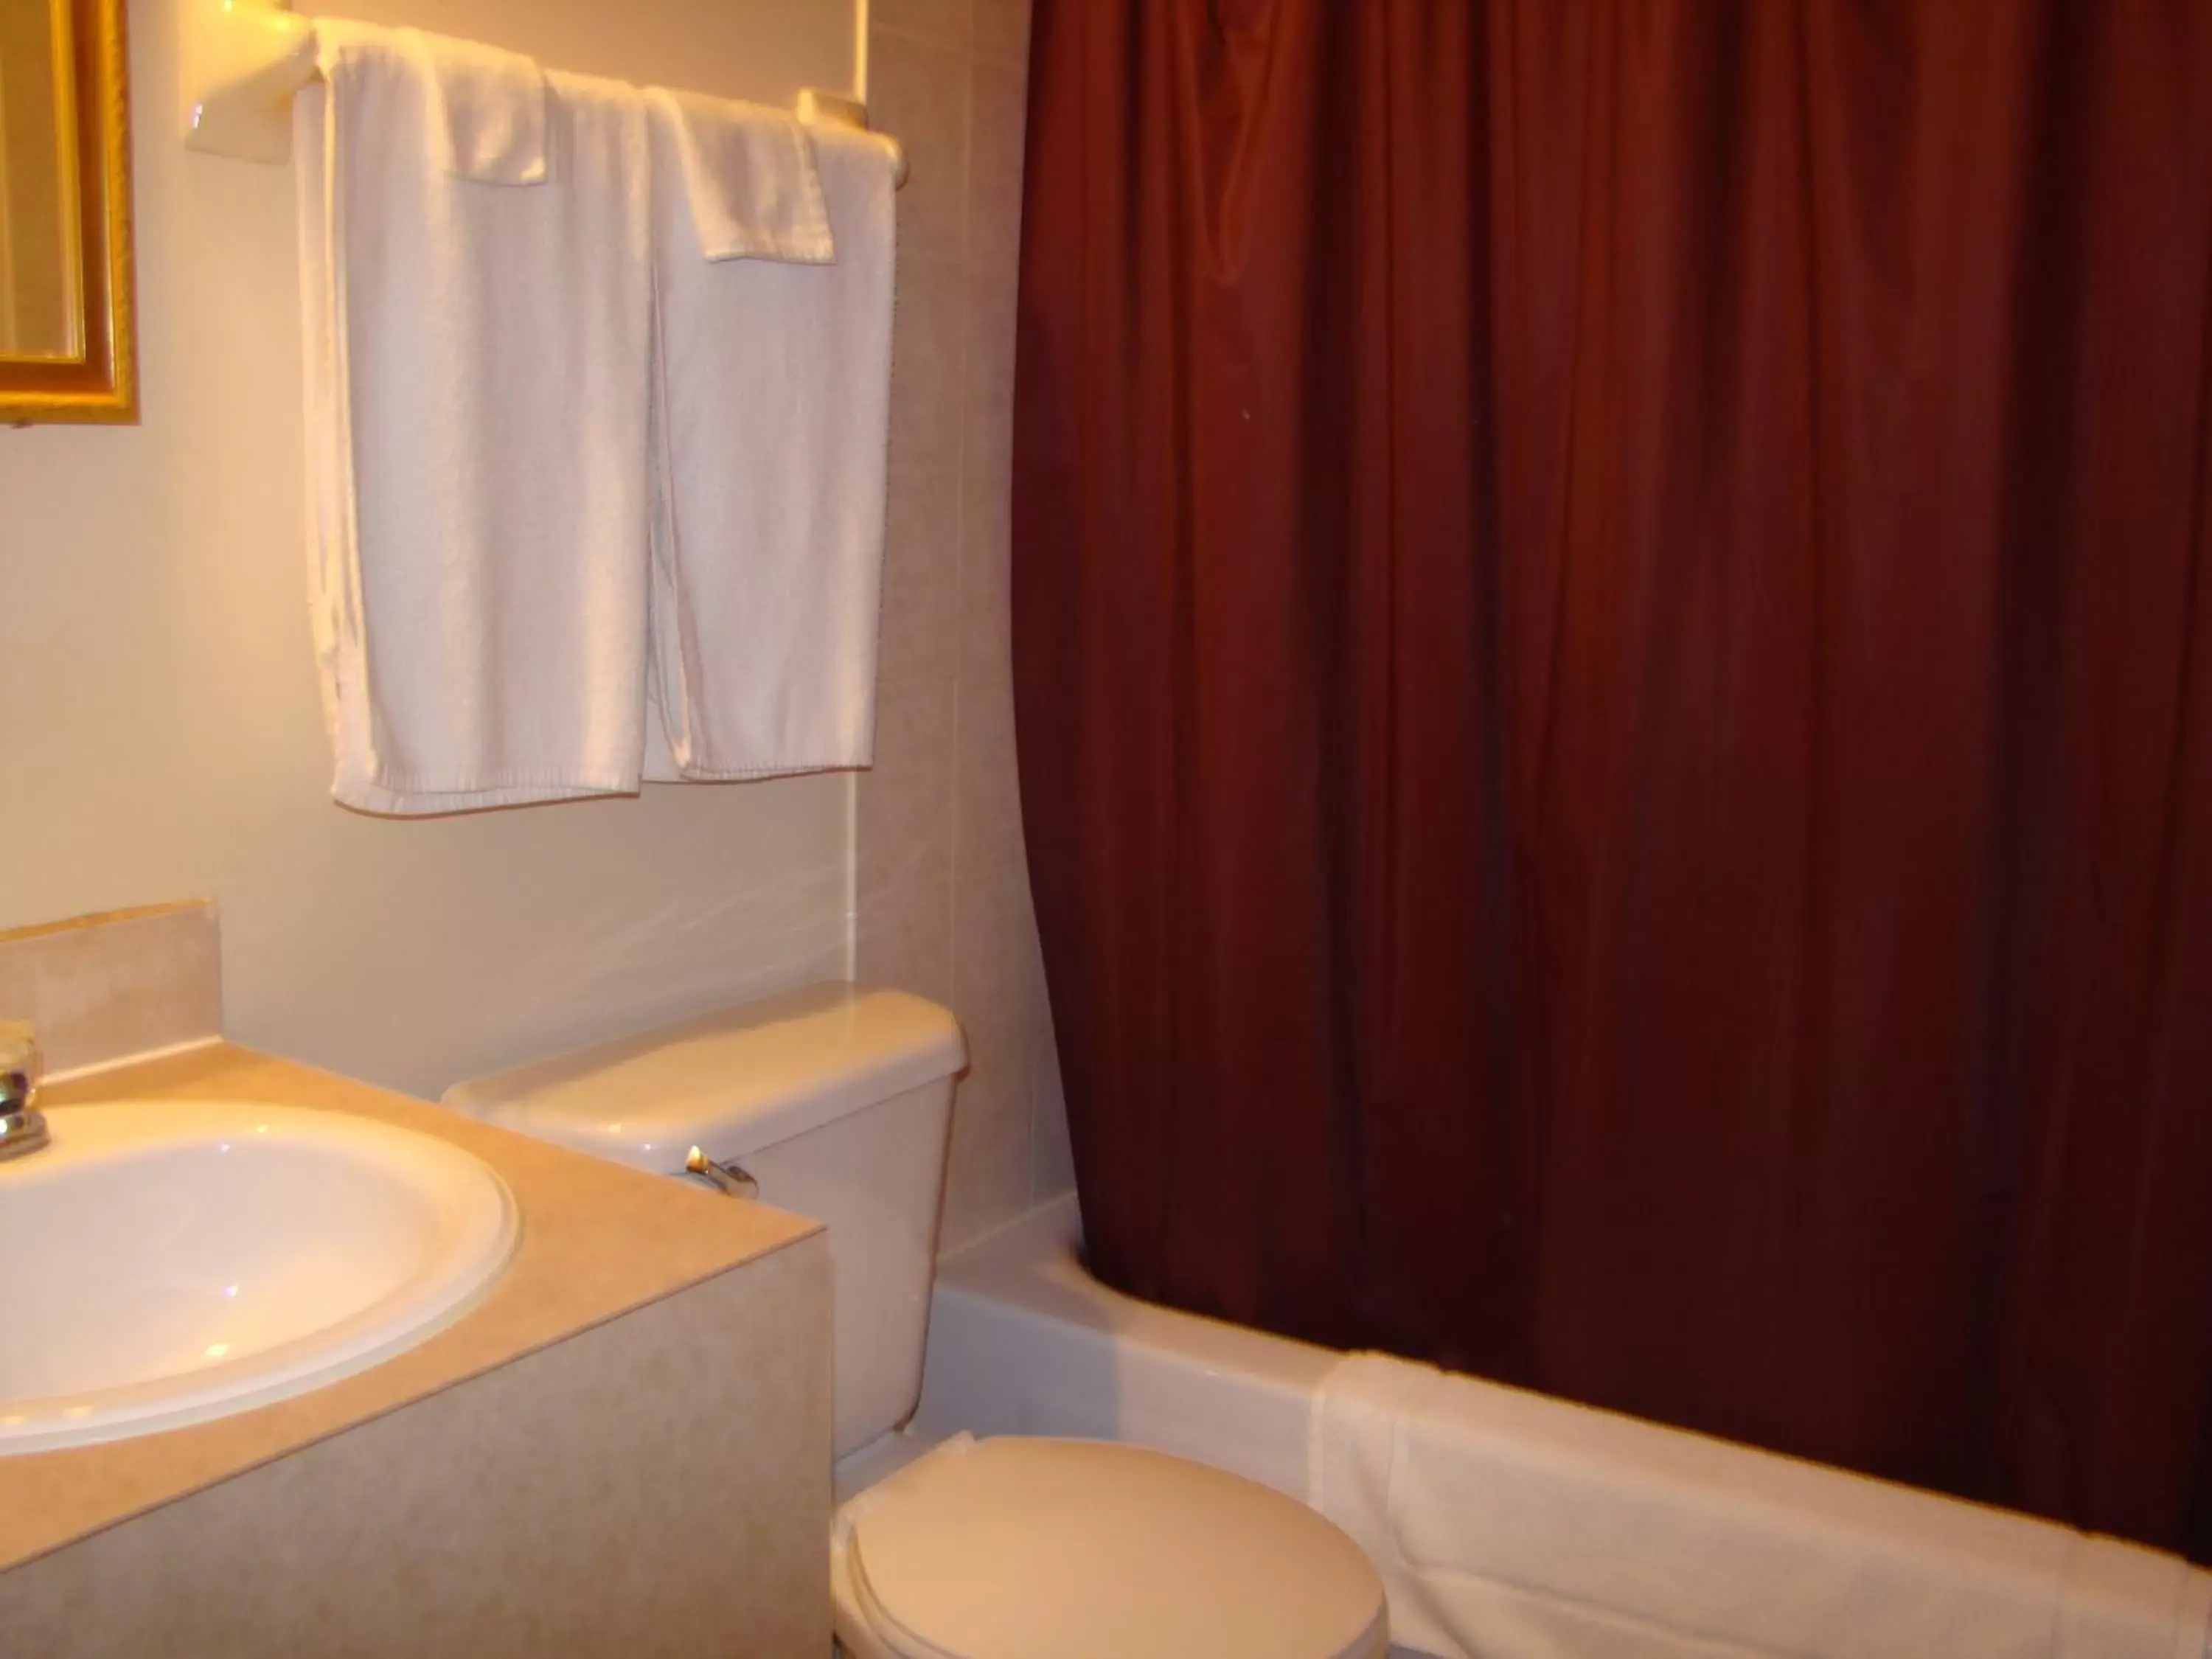 Bathroom in Hotel Quartier Latin